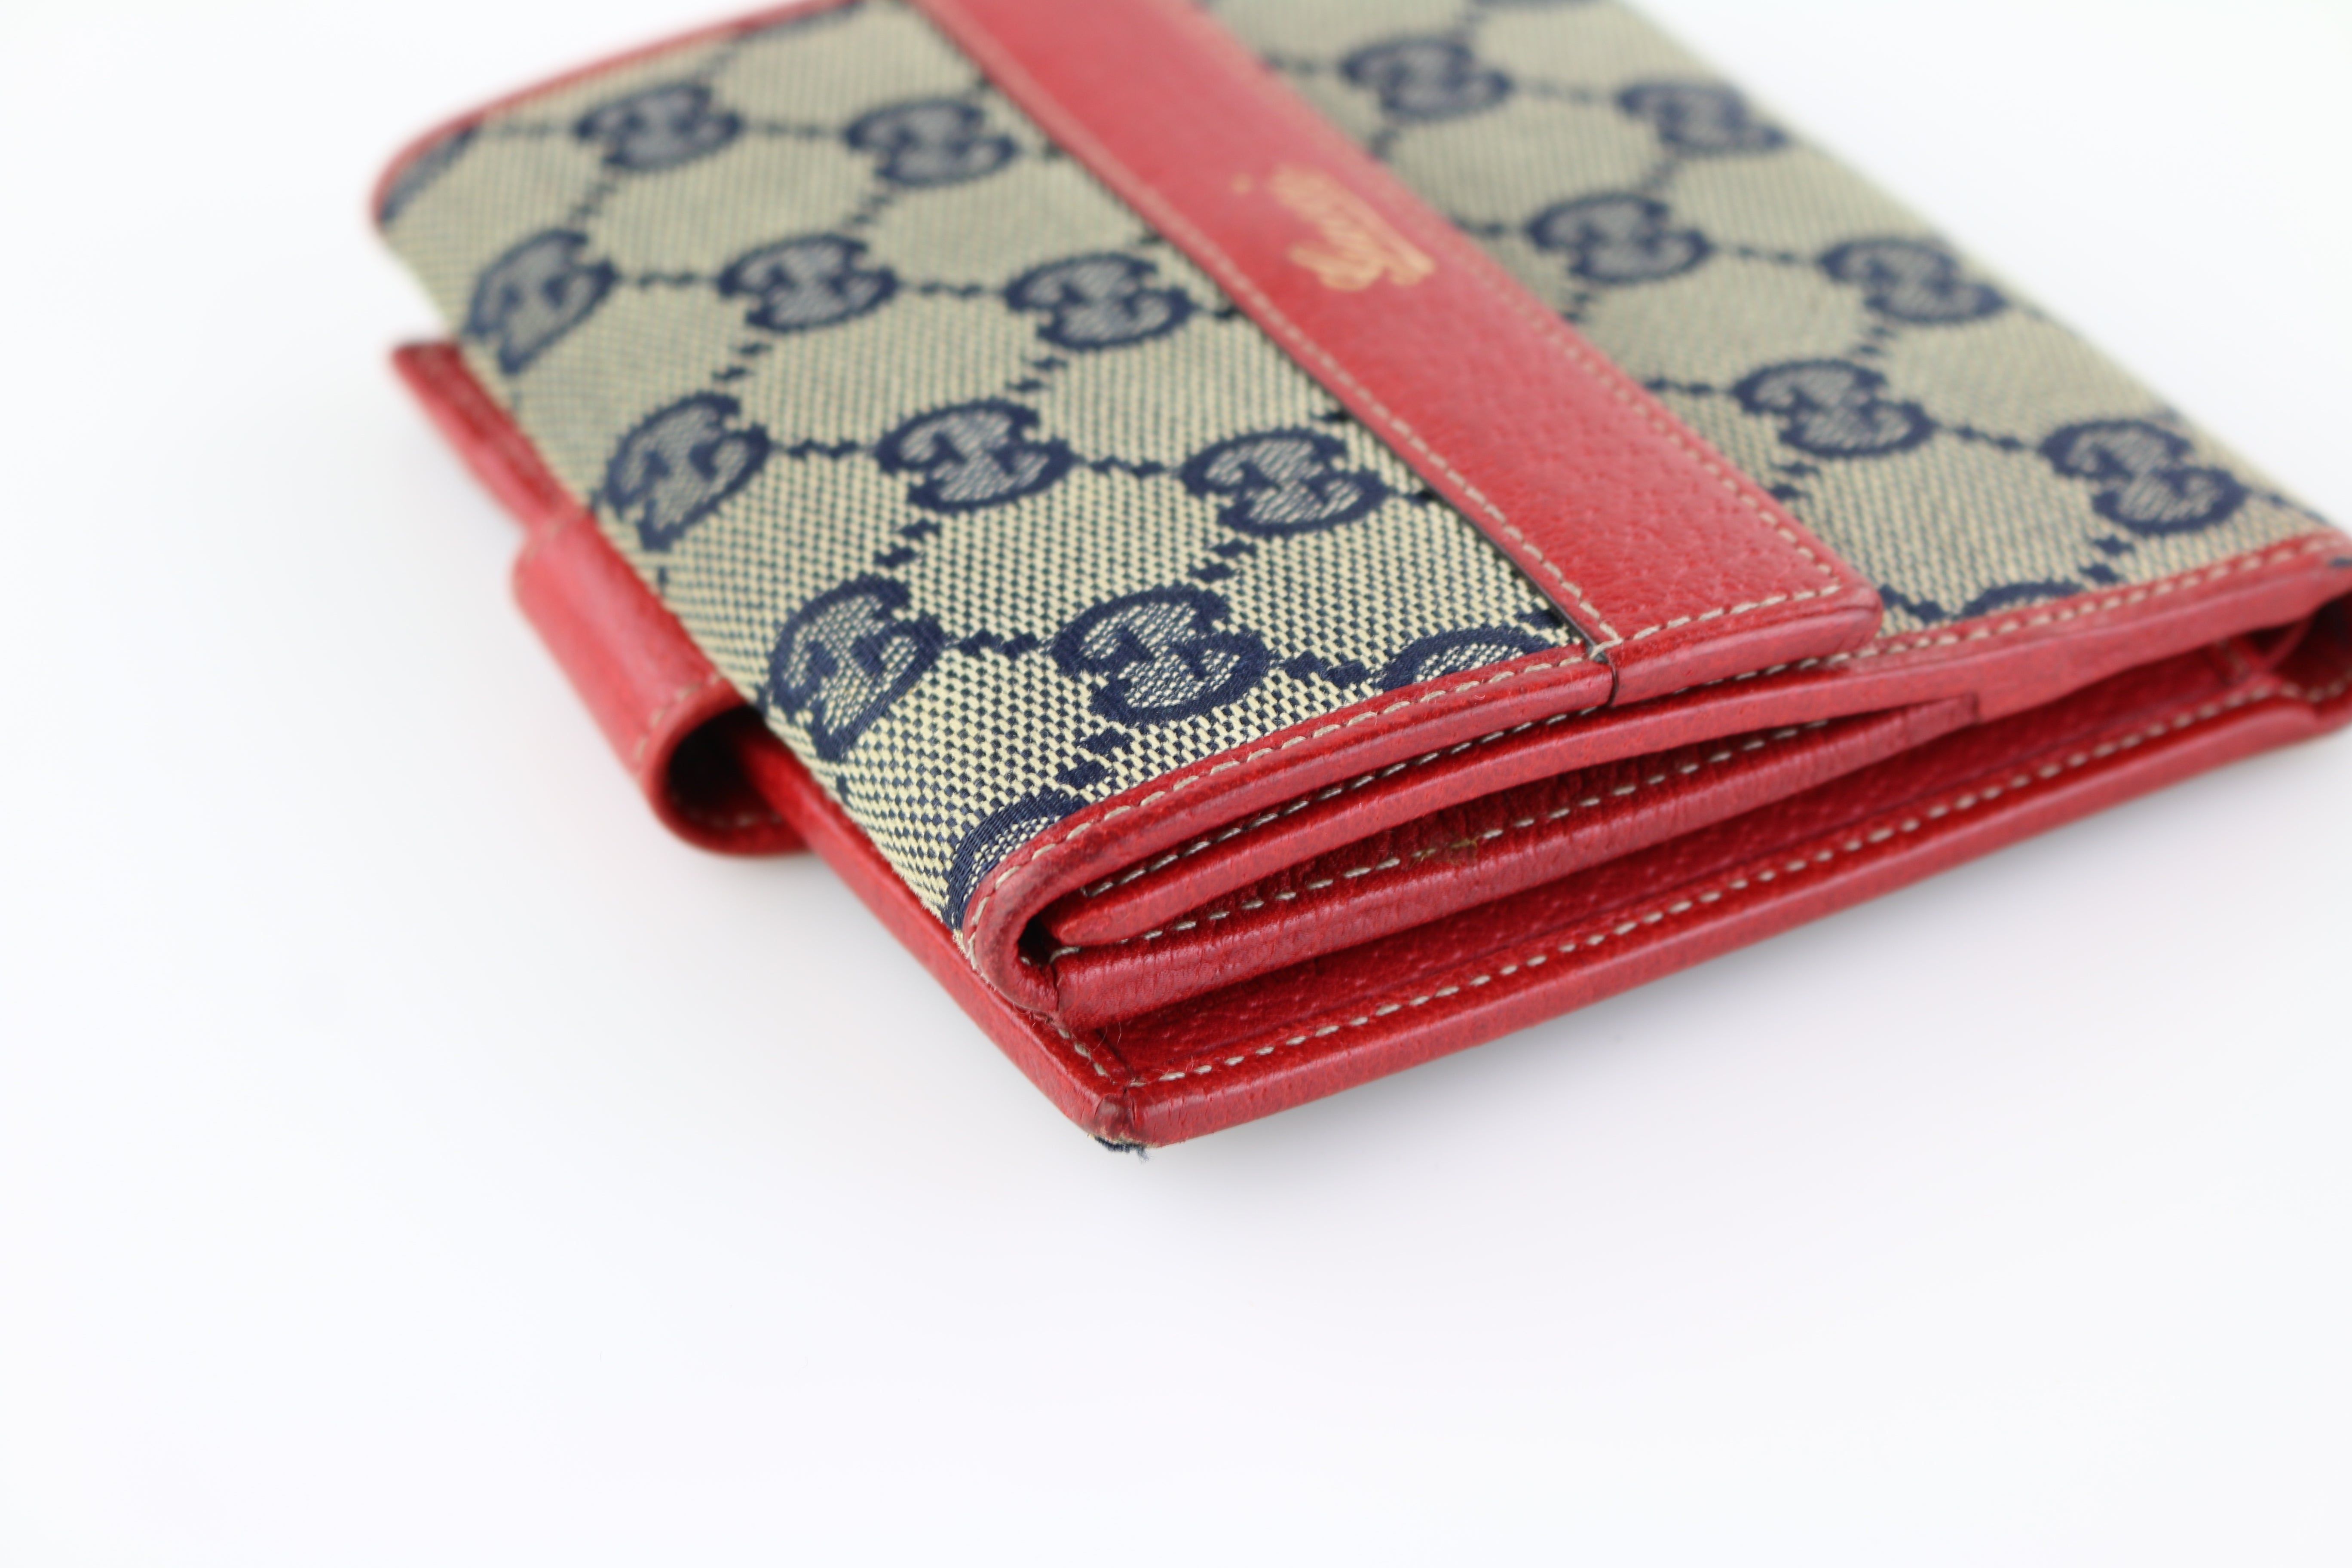 2017 Hot Supreme Wallet Handtasche Red Black Top Qualität Limited Release  Männer Frauen Schultertaschen Beliebte Outdoor Bag Drop Versand Von 51,66 €